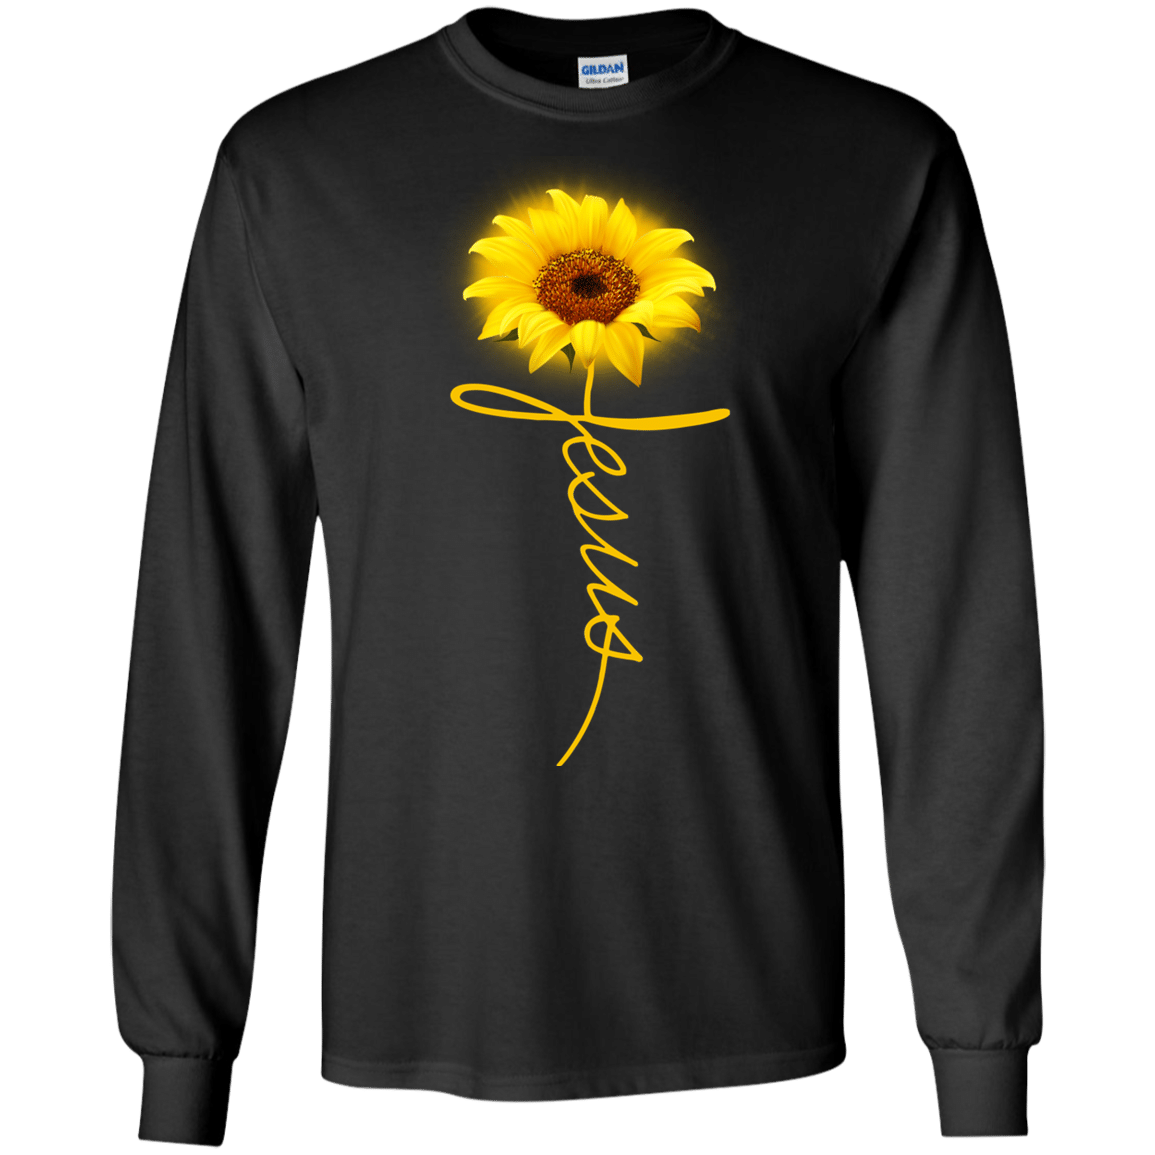 Sunflower Jesus shirt - DaisyFaith